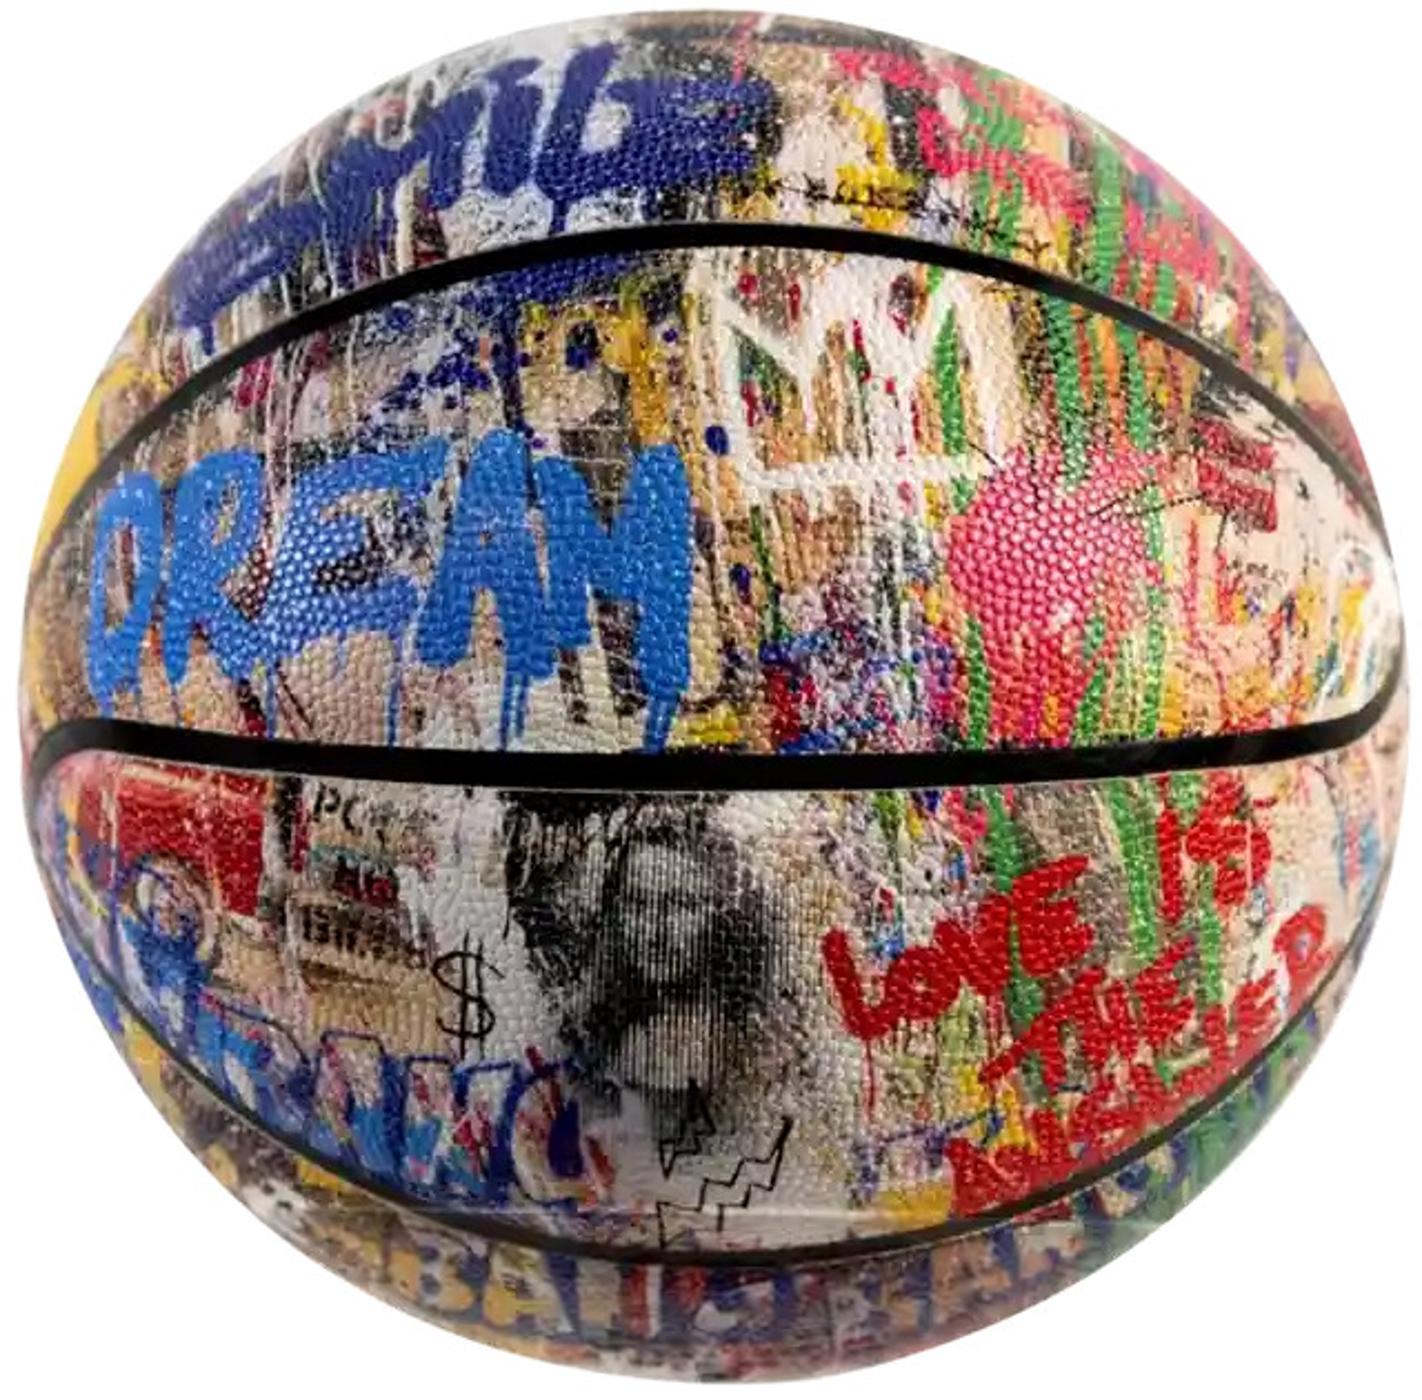 Collage de basket-ball

Par M. Brainwash

Mr. Brainwash, de son vrai nom Thierry Gaines, est un artiste de rue et cinéaste français connu pour ses œuvres d'art d'inspiration pop et de graffitis, et qui a acquis une large reconnaissance grâce à son